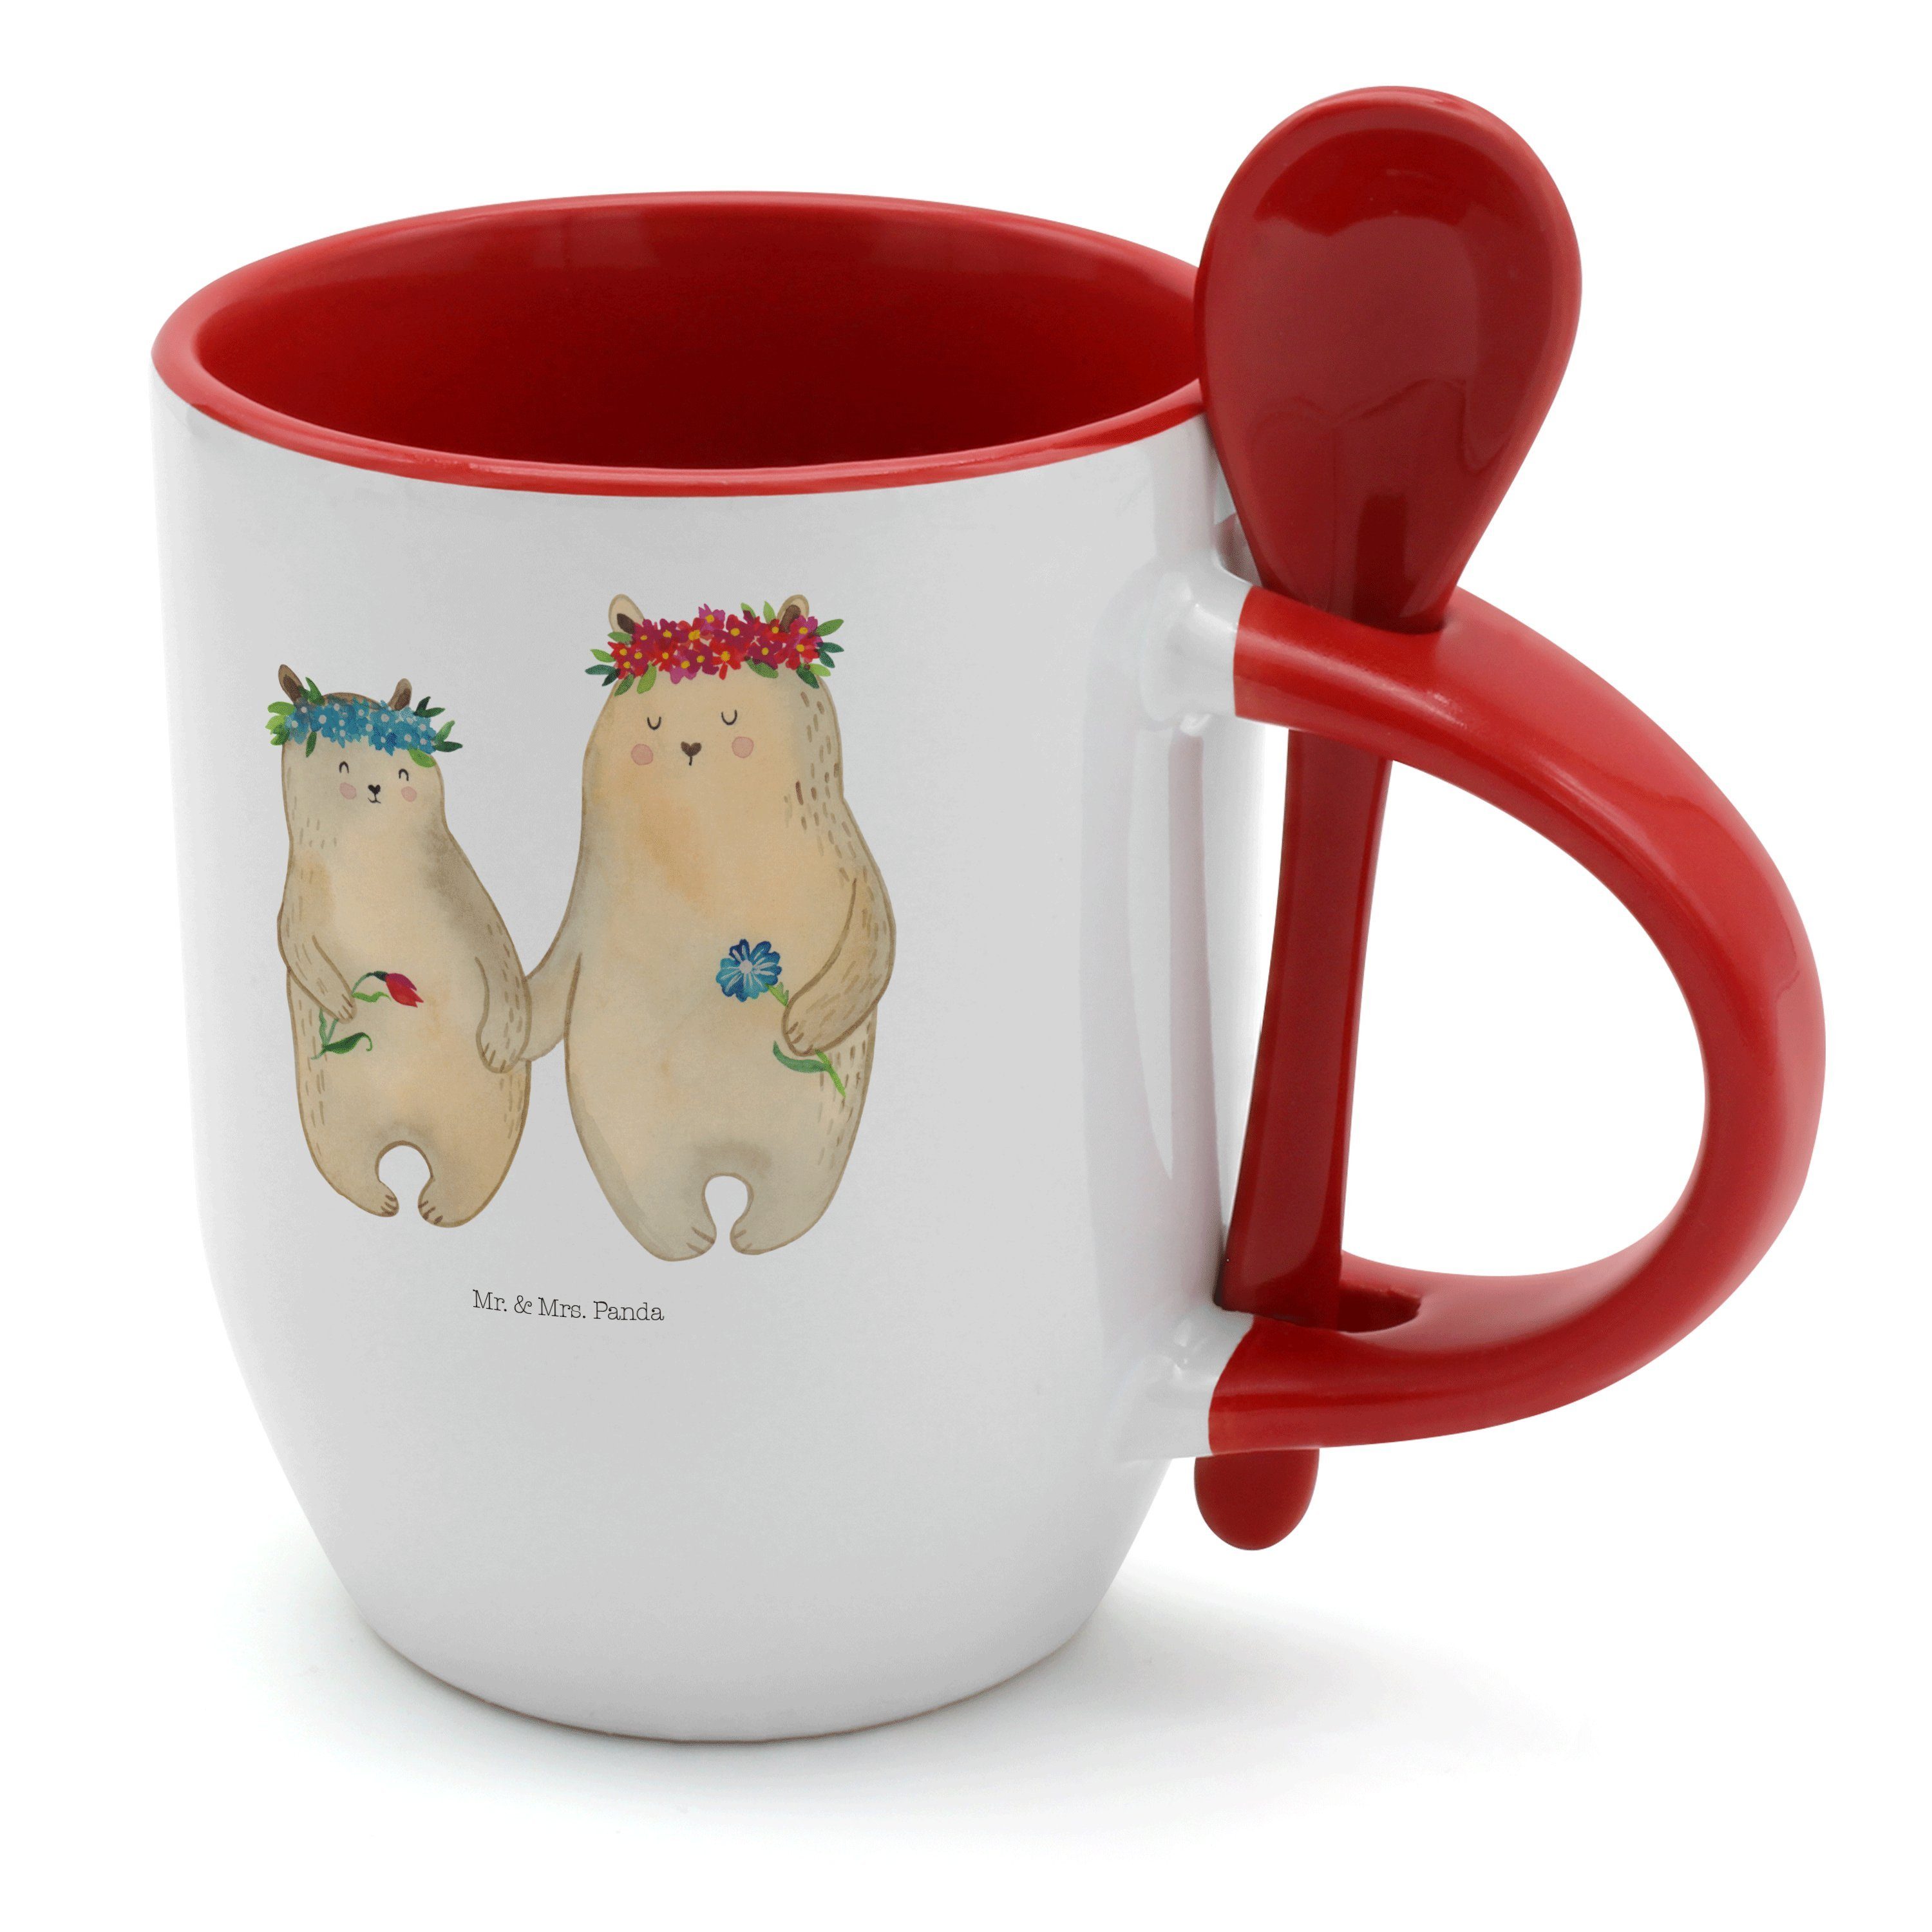 Mr. & Mrs. Panda T, Weiß Vatertag, Bären Tasse Blumenkranz Keramik - mit Geschenk, - Lieblingsmensch